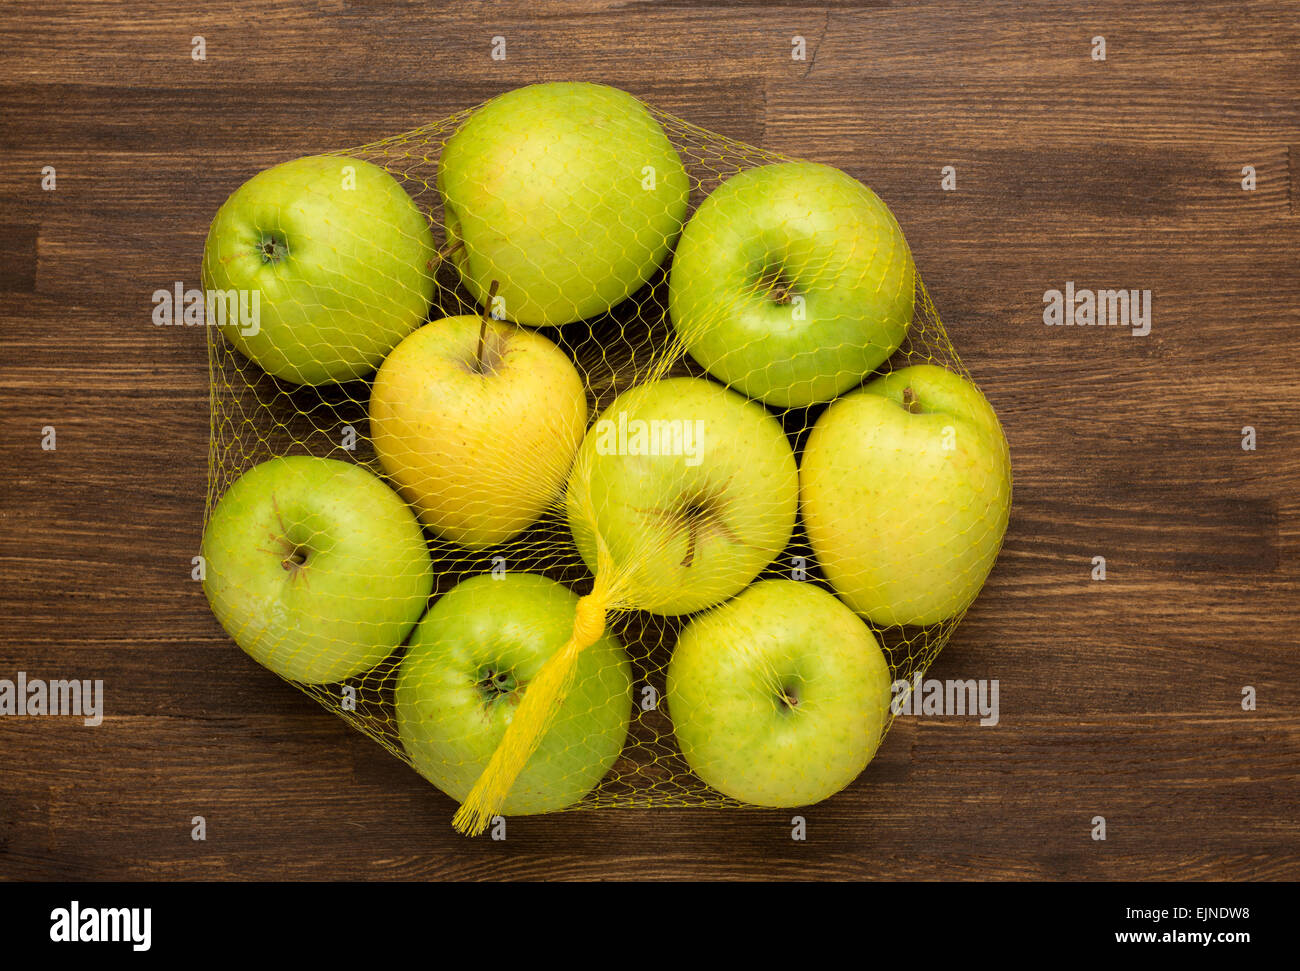 Montón de manzanas en la malla de la tienda en madera Foto de stock